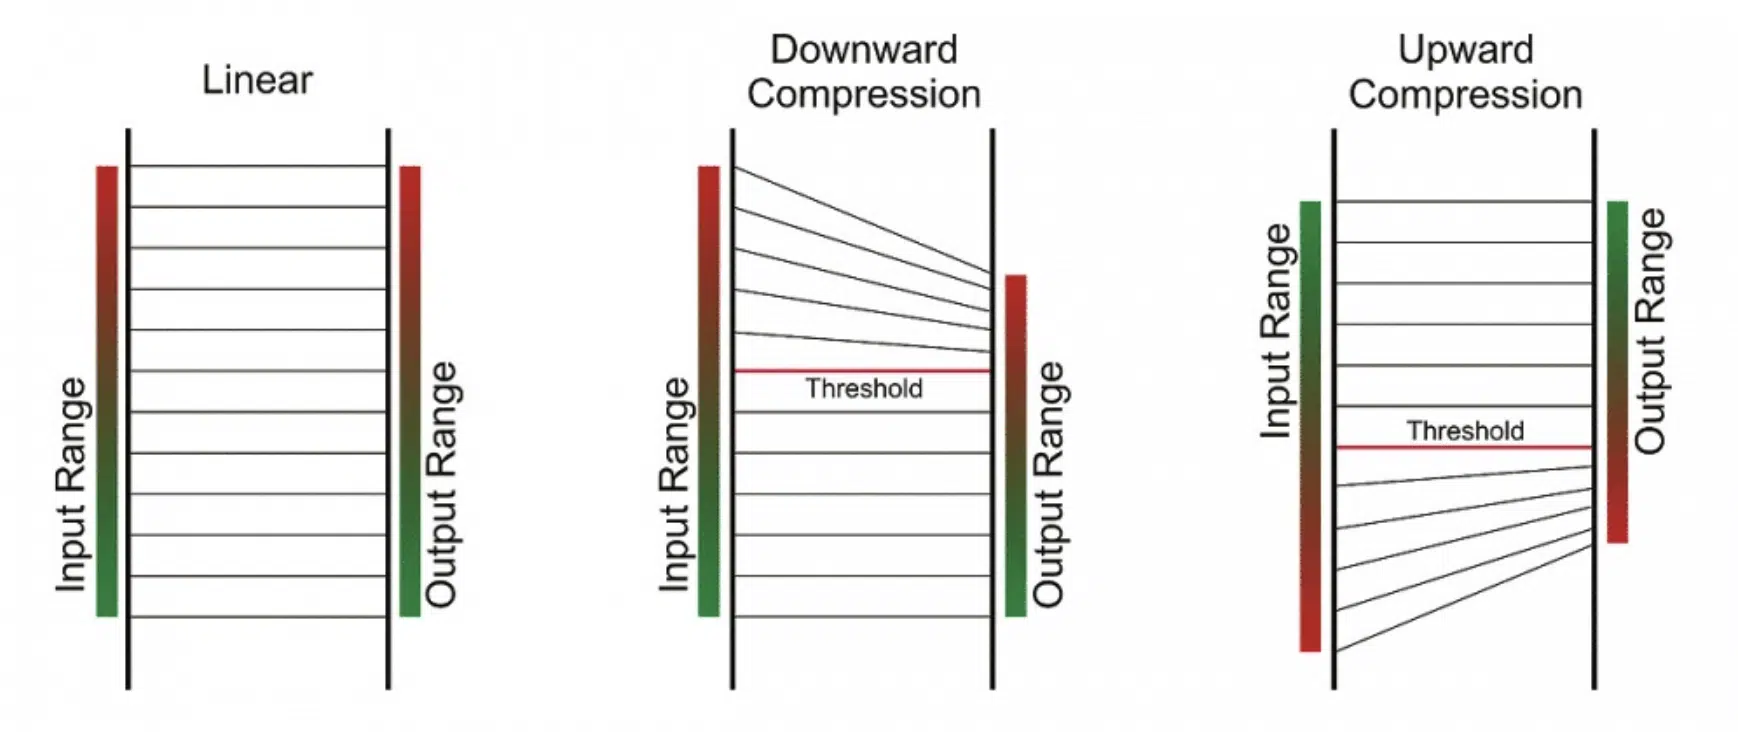 Upward vs Downward Compression - Unison